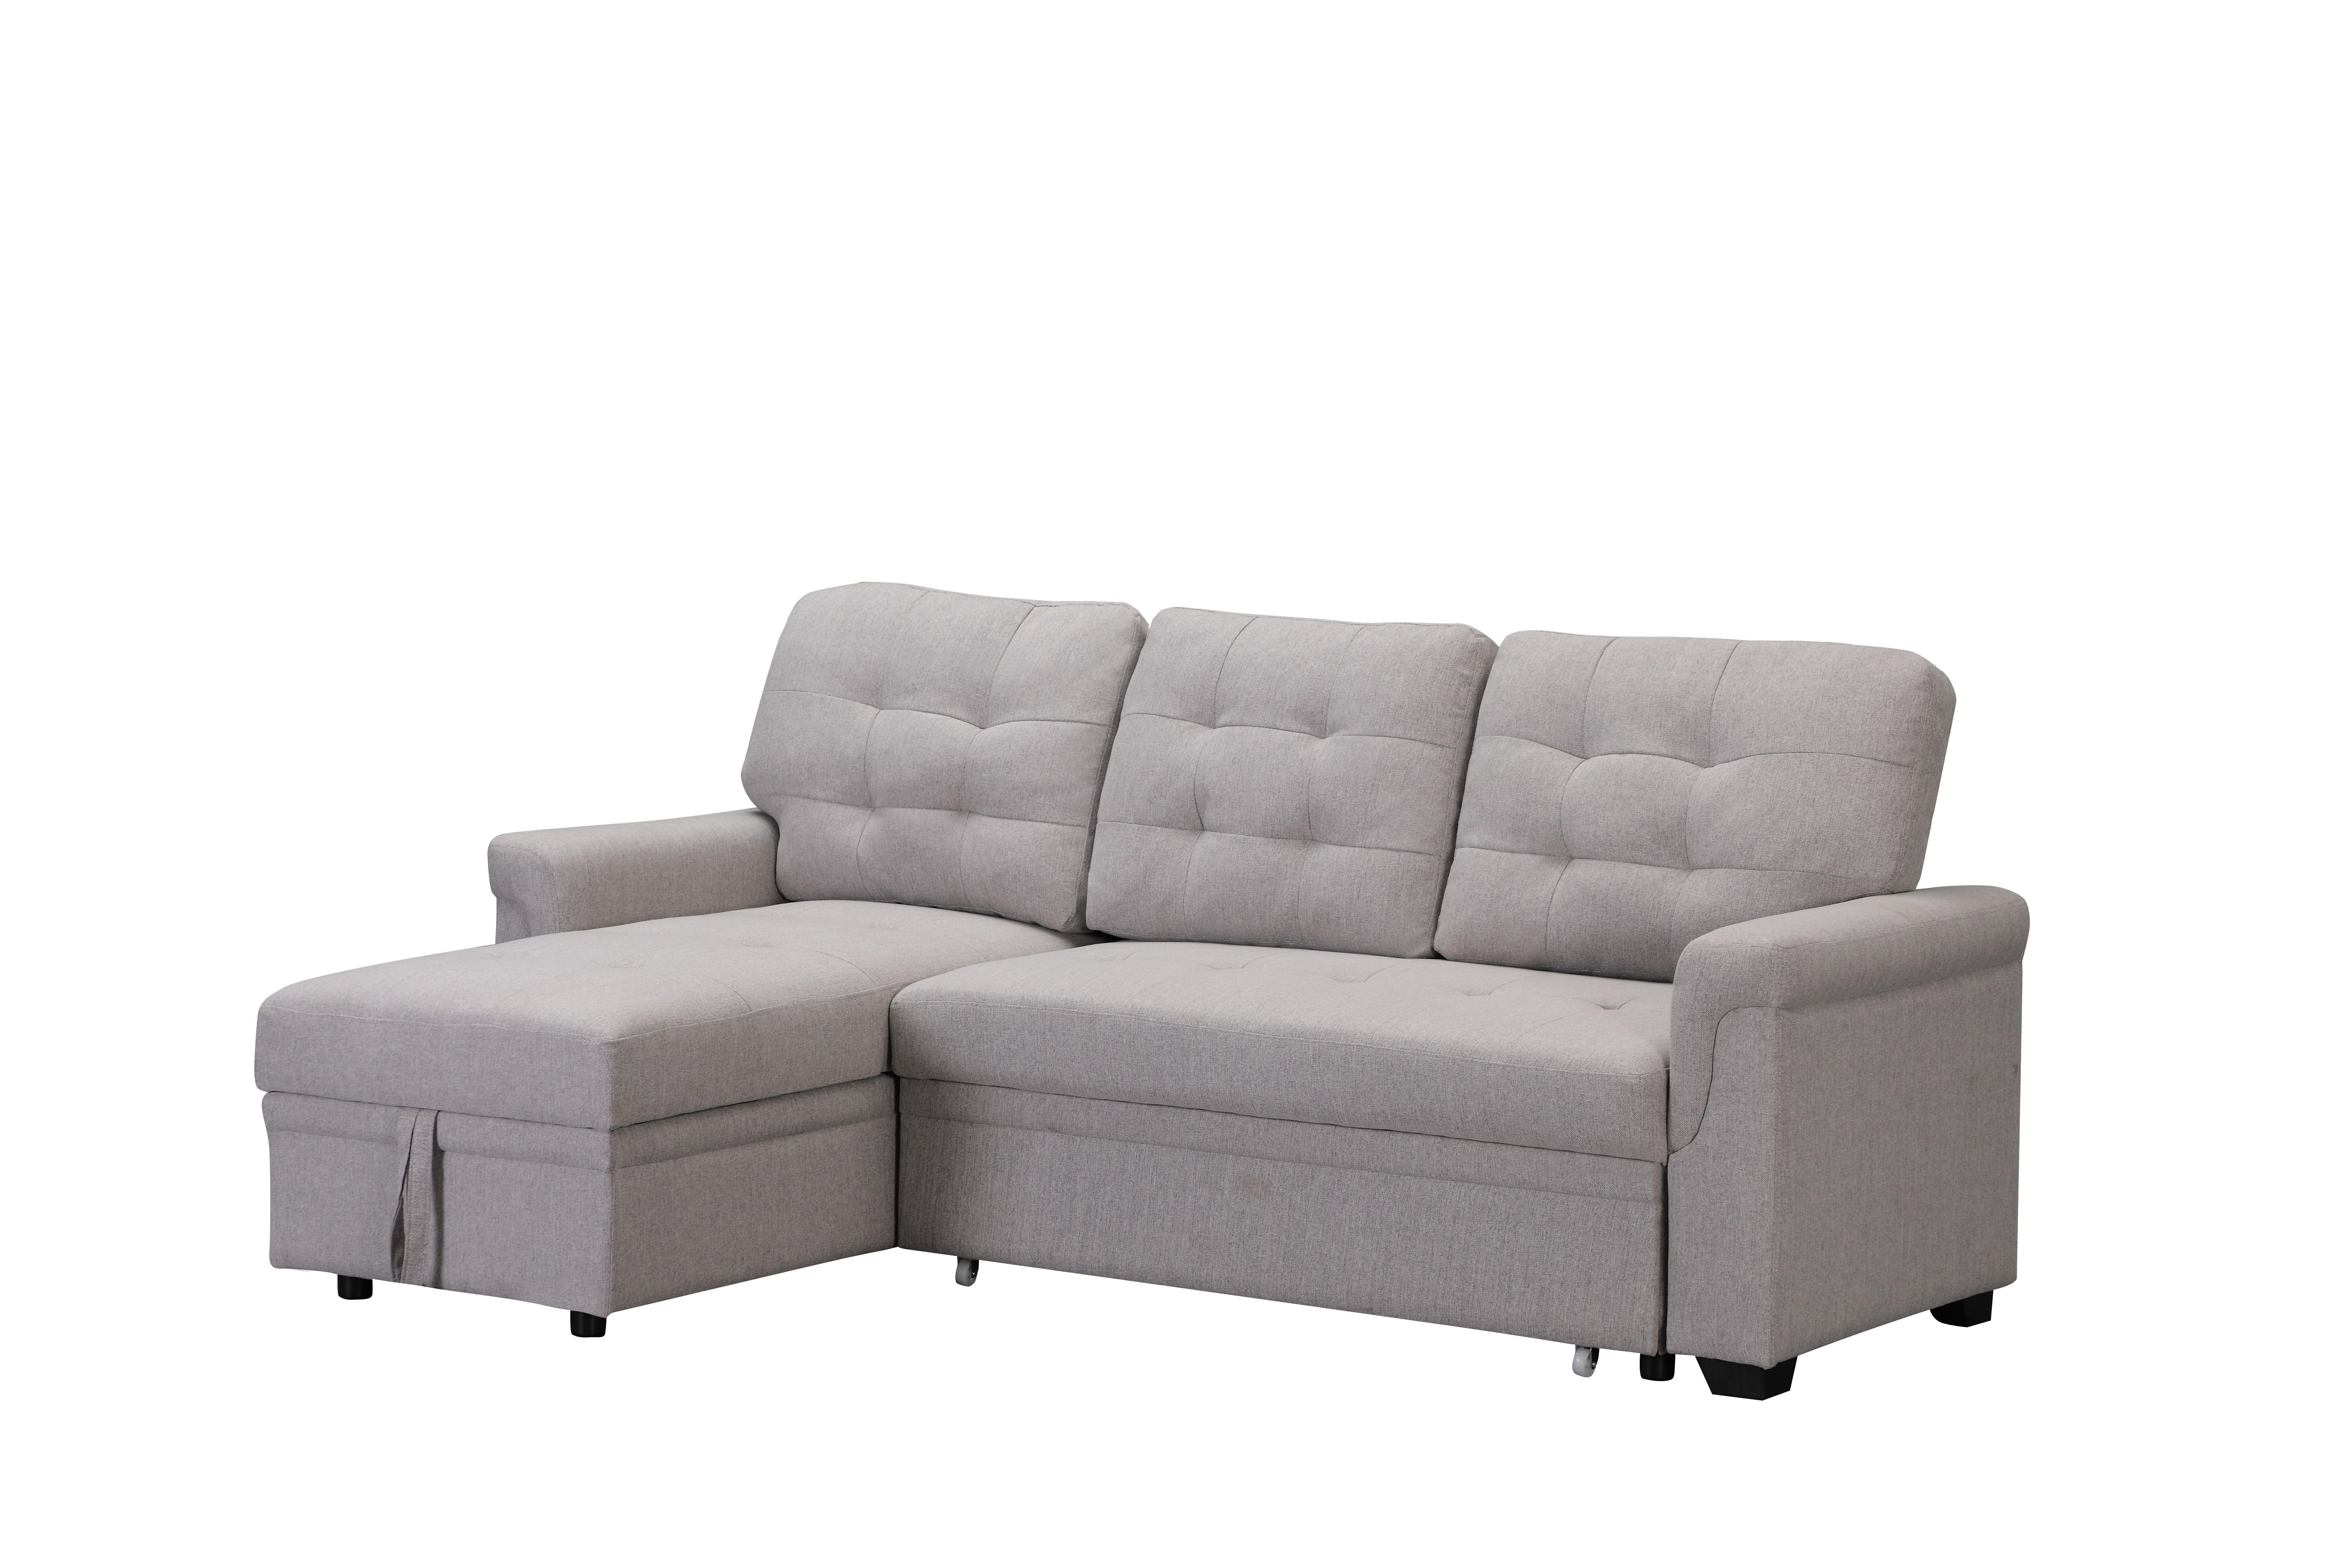 cheap modern sofa bed